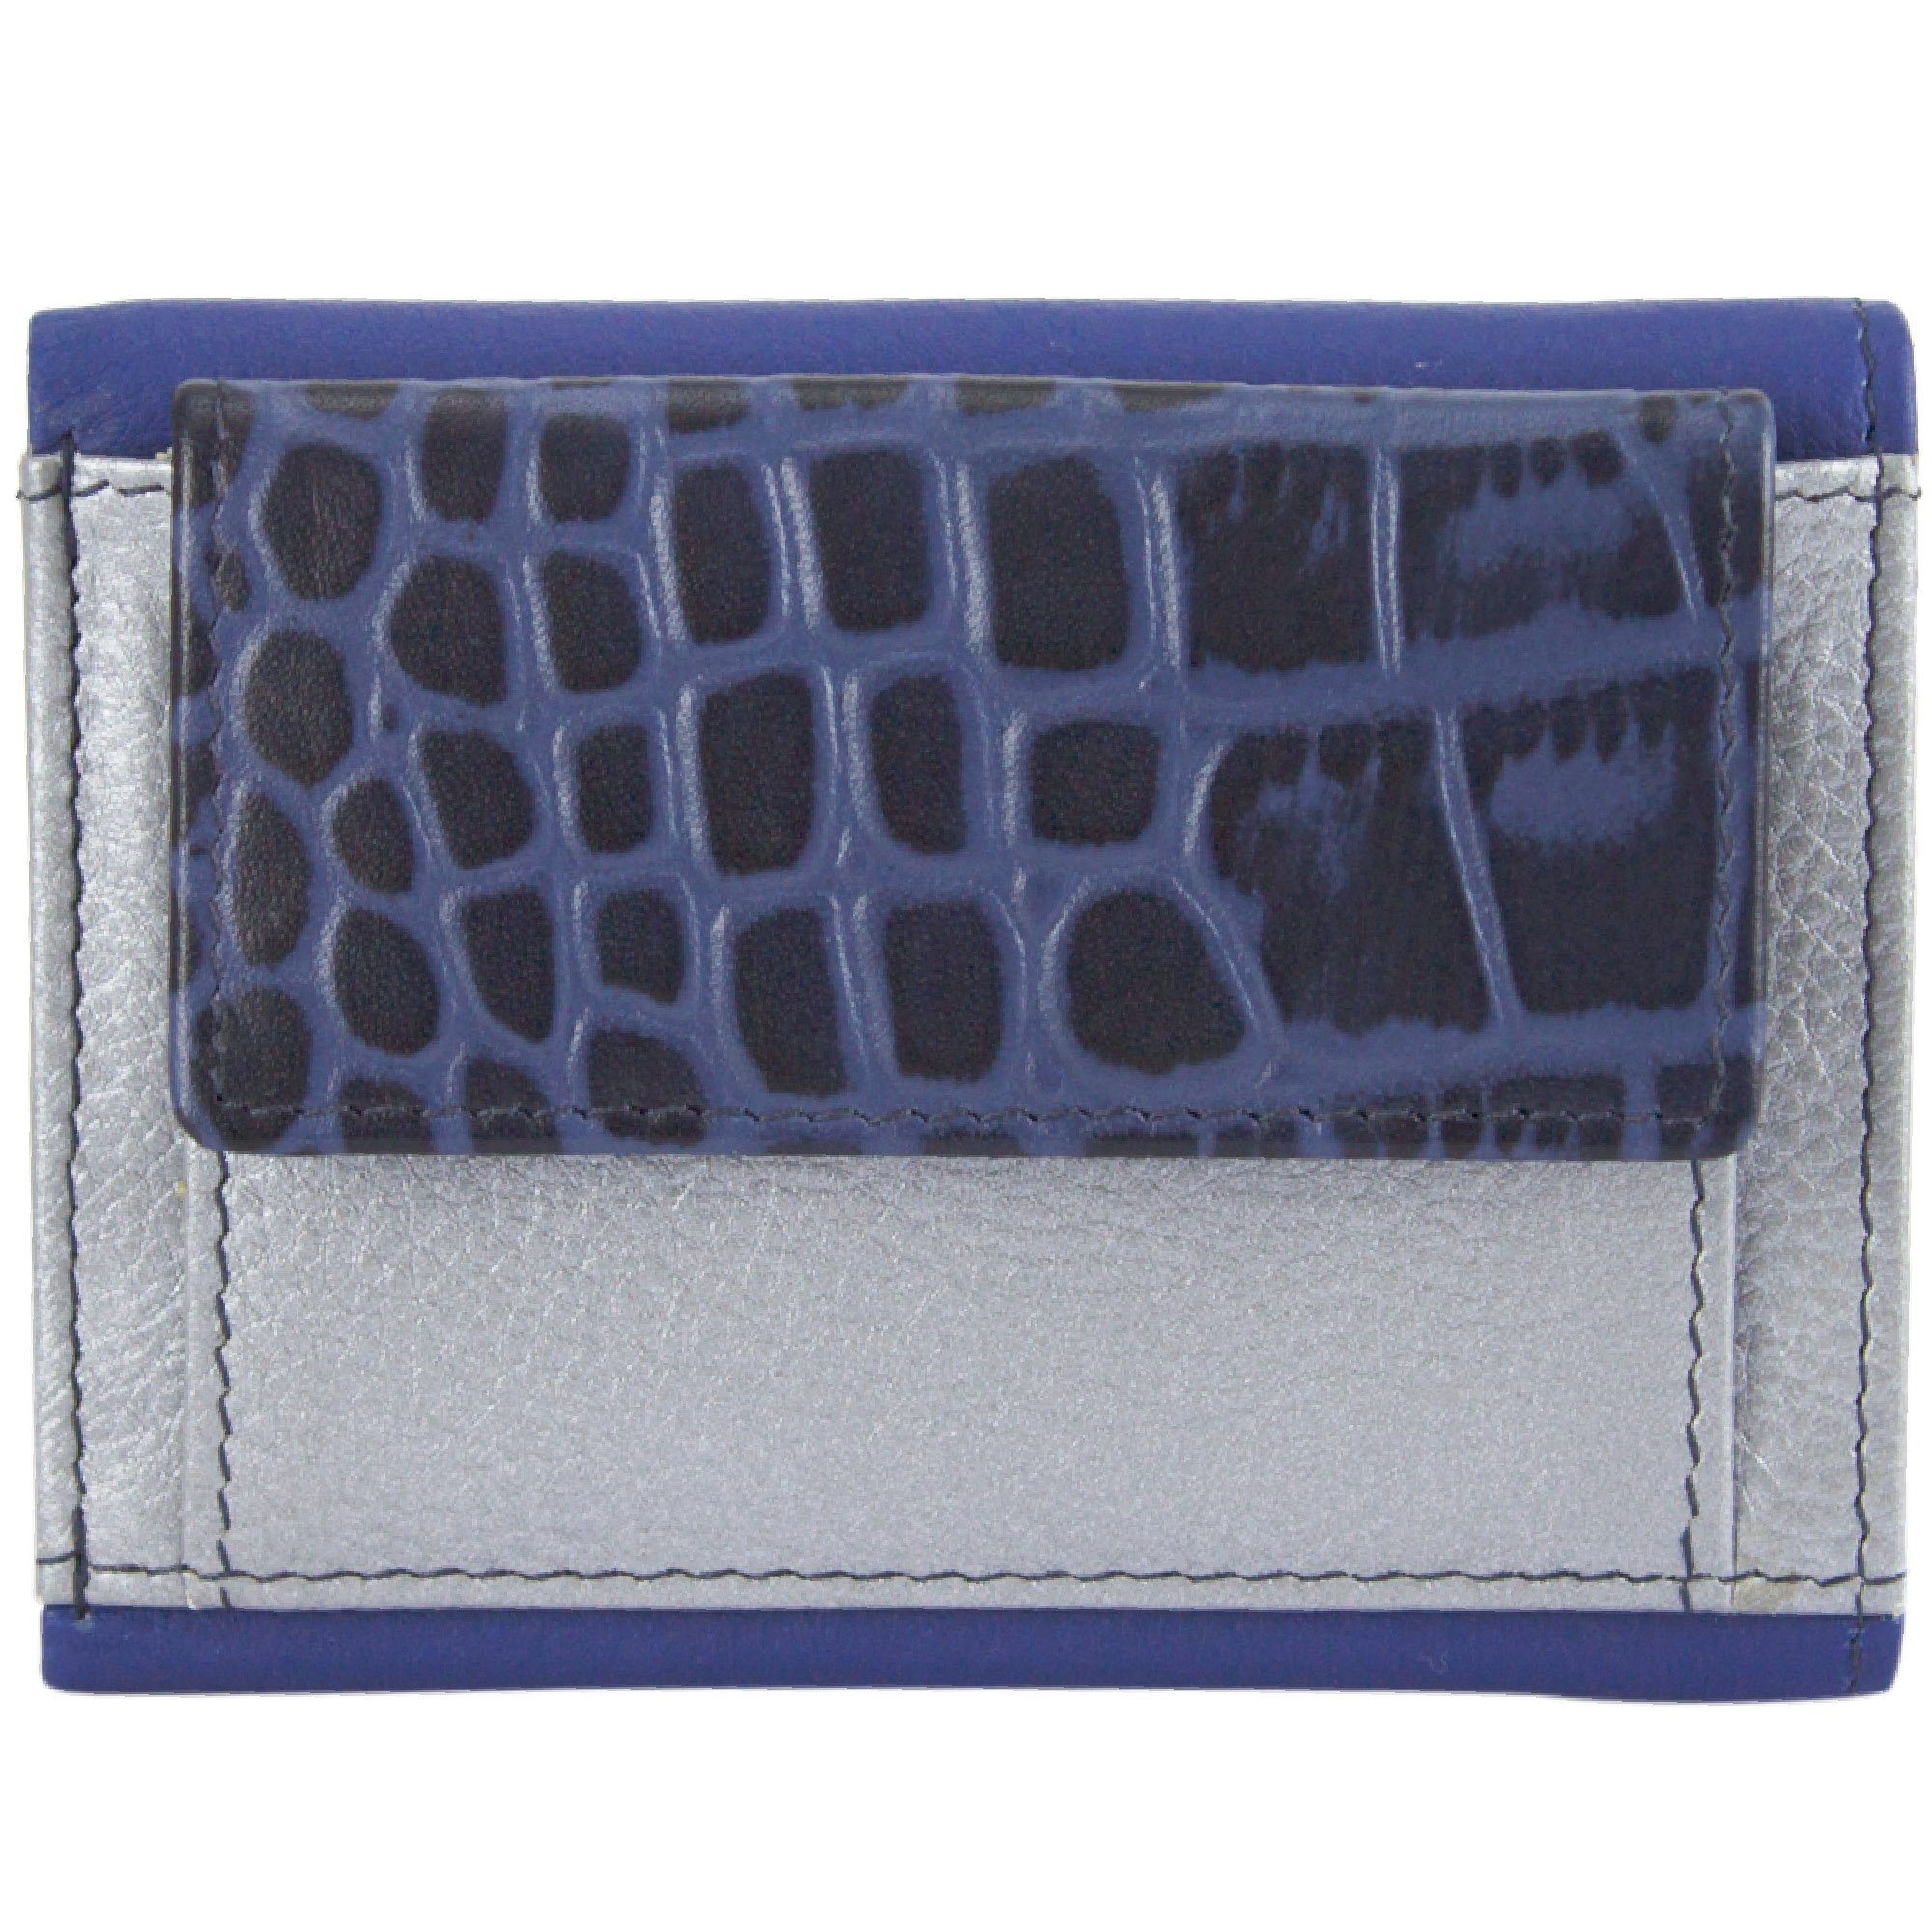 Sunsa Mini Geldbörse klein Unisex Geldbeutel Geldbörse Mini Leder, RFID-Schutz, Leder Portemonnaie echt Lederresten, aus mit Brieftasche, blau/silber recycelten